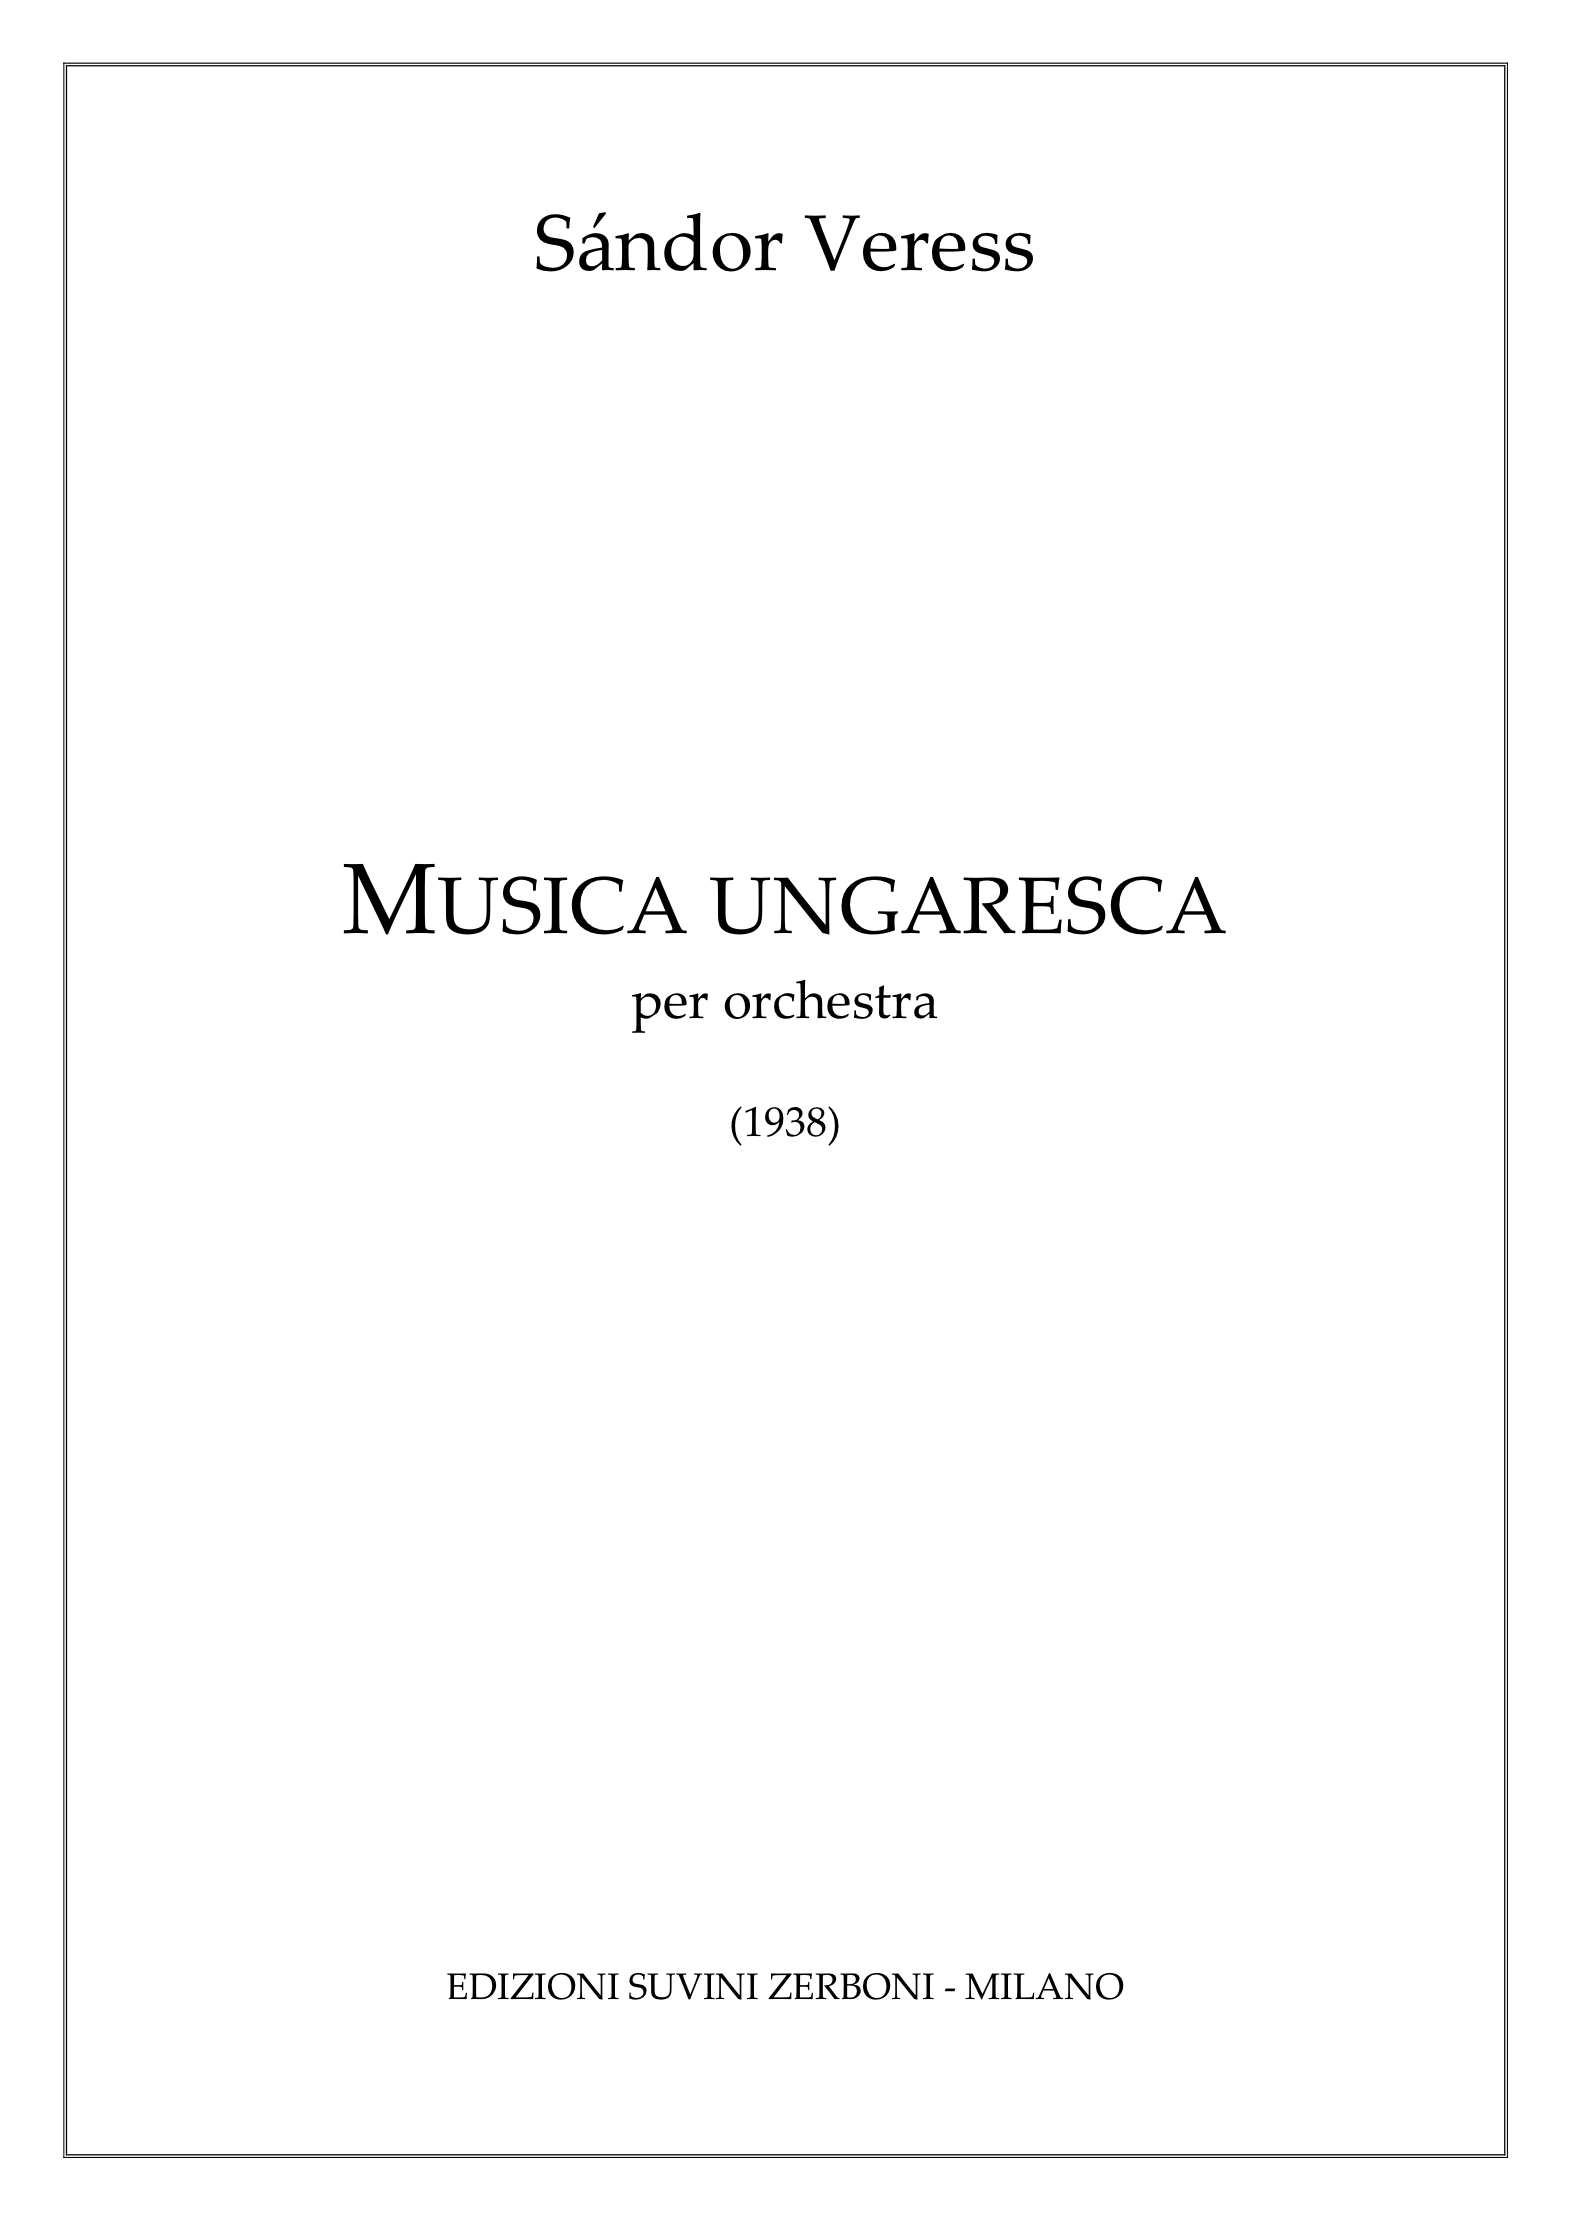 Musica Ungaresca_Veress 1